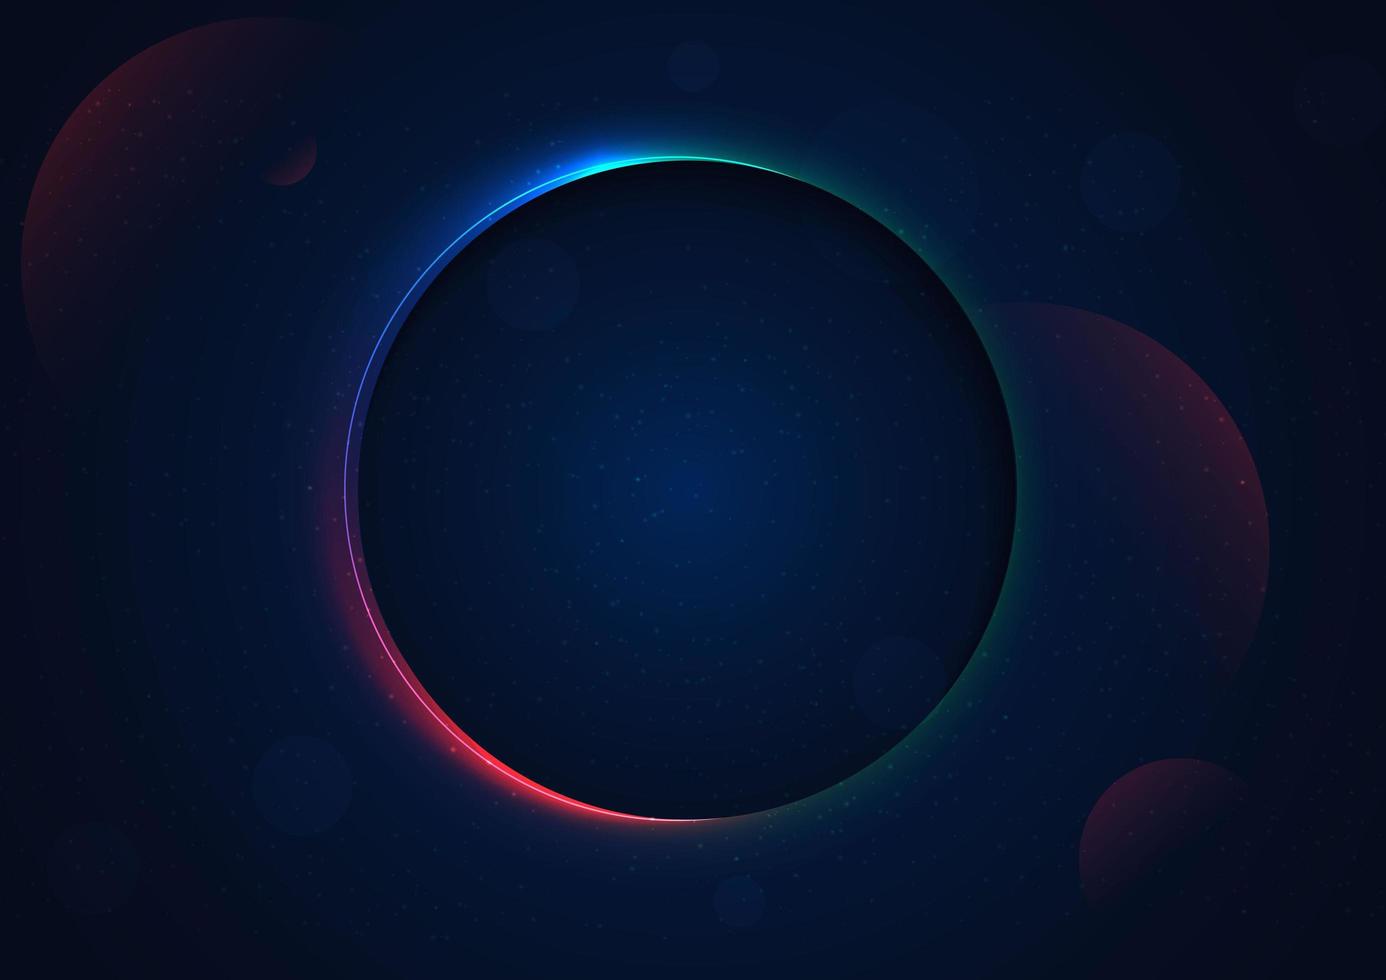 dimension profonde du cercle abstrait sur fond bleu foncé avec un néon coloré brillant. vecteur